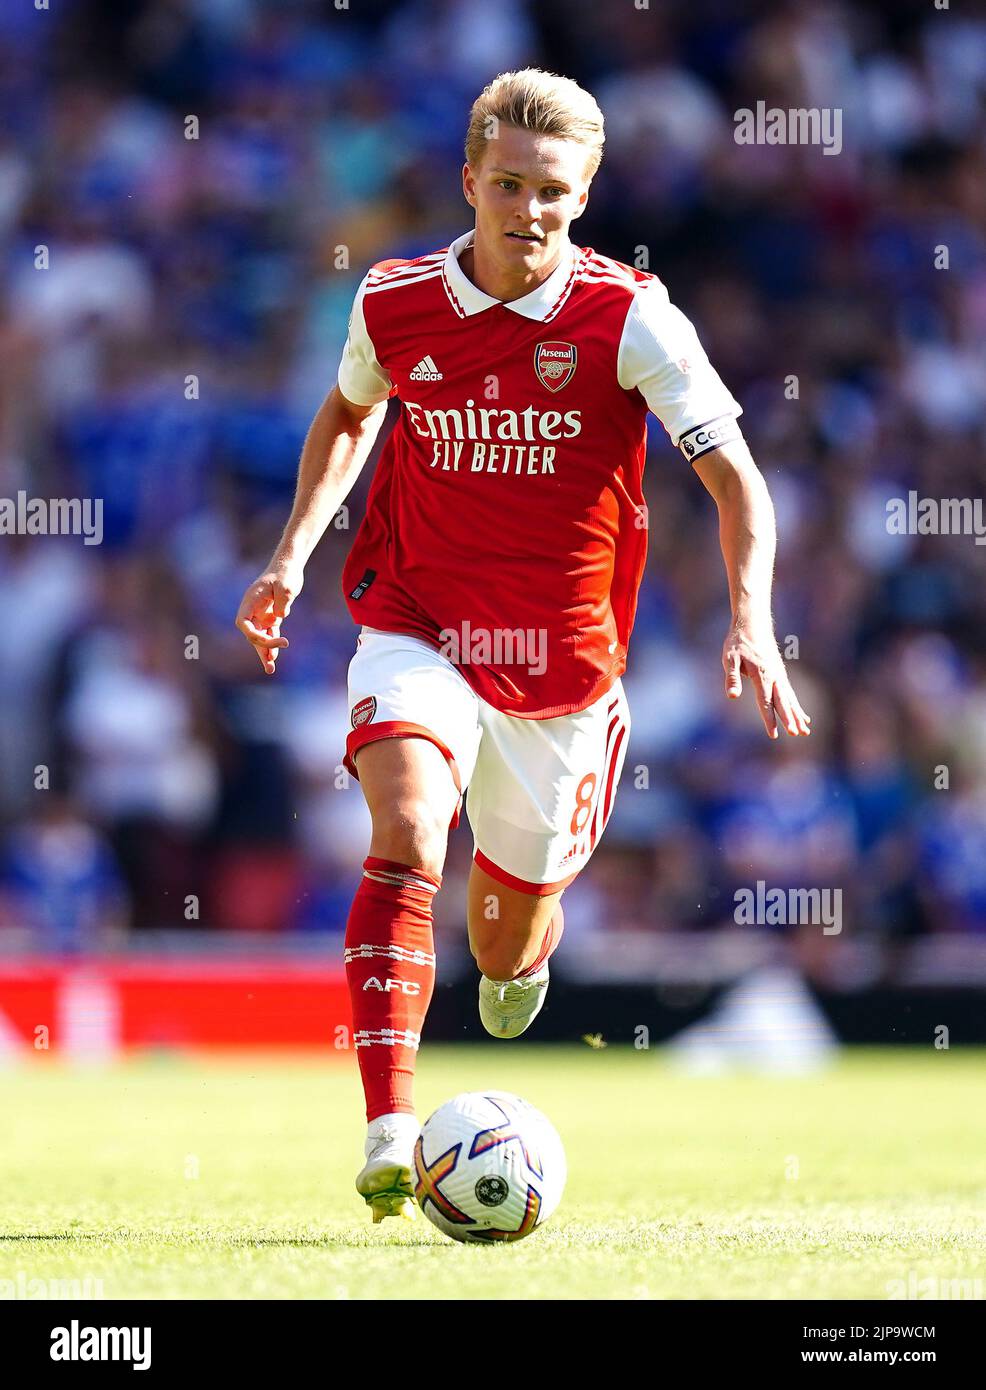 Martin Odegaard, del Arsenal, en acción durante el partido de la Premier League en el Emirates Stadium de Londres. Fecha de la foto: Sábado 13 de agosto de 2022. Foto de stock